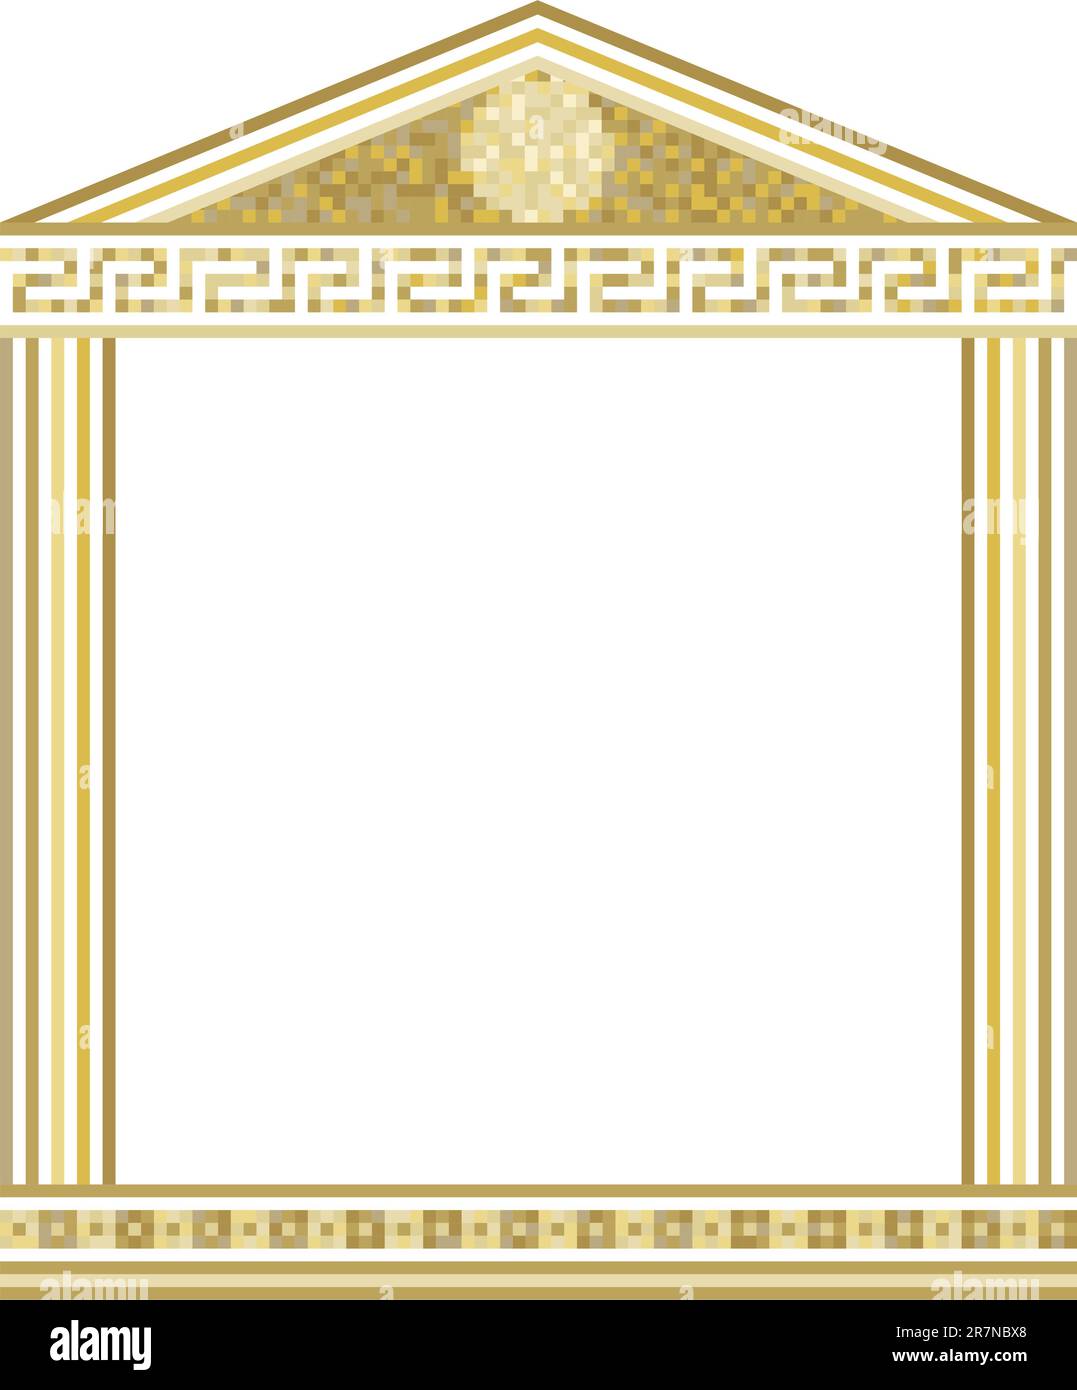 Illustration de colonnes grecques avec mosaïque en haut Illustration de Vecteur